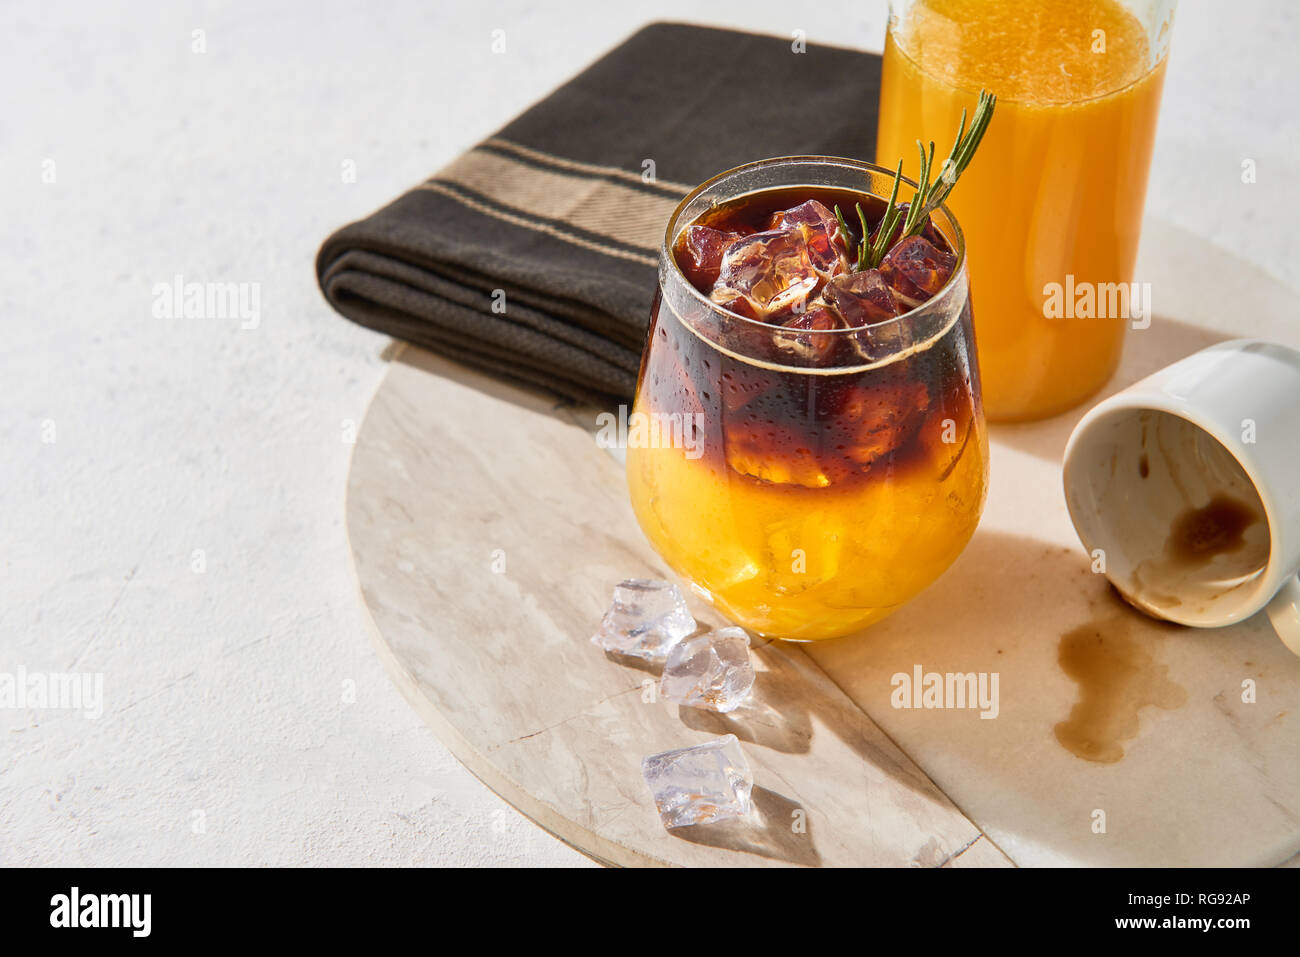 Froid de glace boisson d'été. Expresso jus d'orange avec de la glace, une bouteille de jus d'orange bio et vide d'espresso sur une assiette de marbre blanc sur fond blanc Banque D'Images